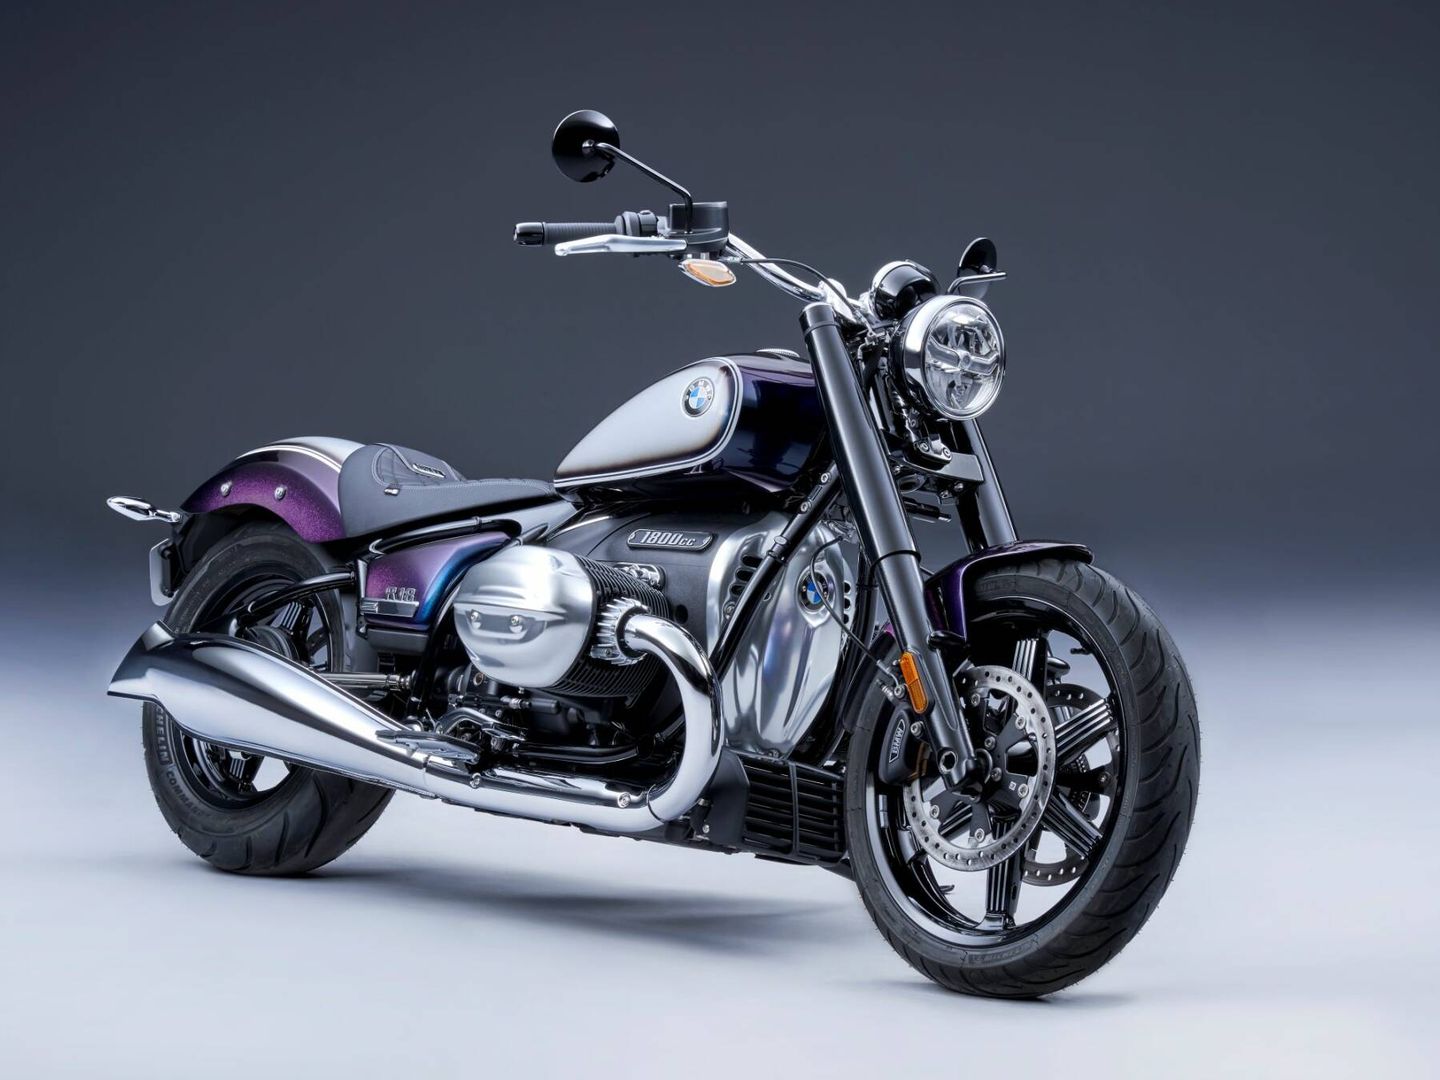 'Rent a Ride' ofrece todo tipo de motos, incluidos los últimos lanzamientos de la marca alemana.